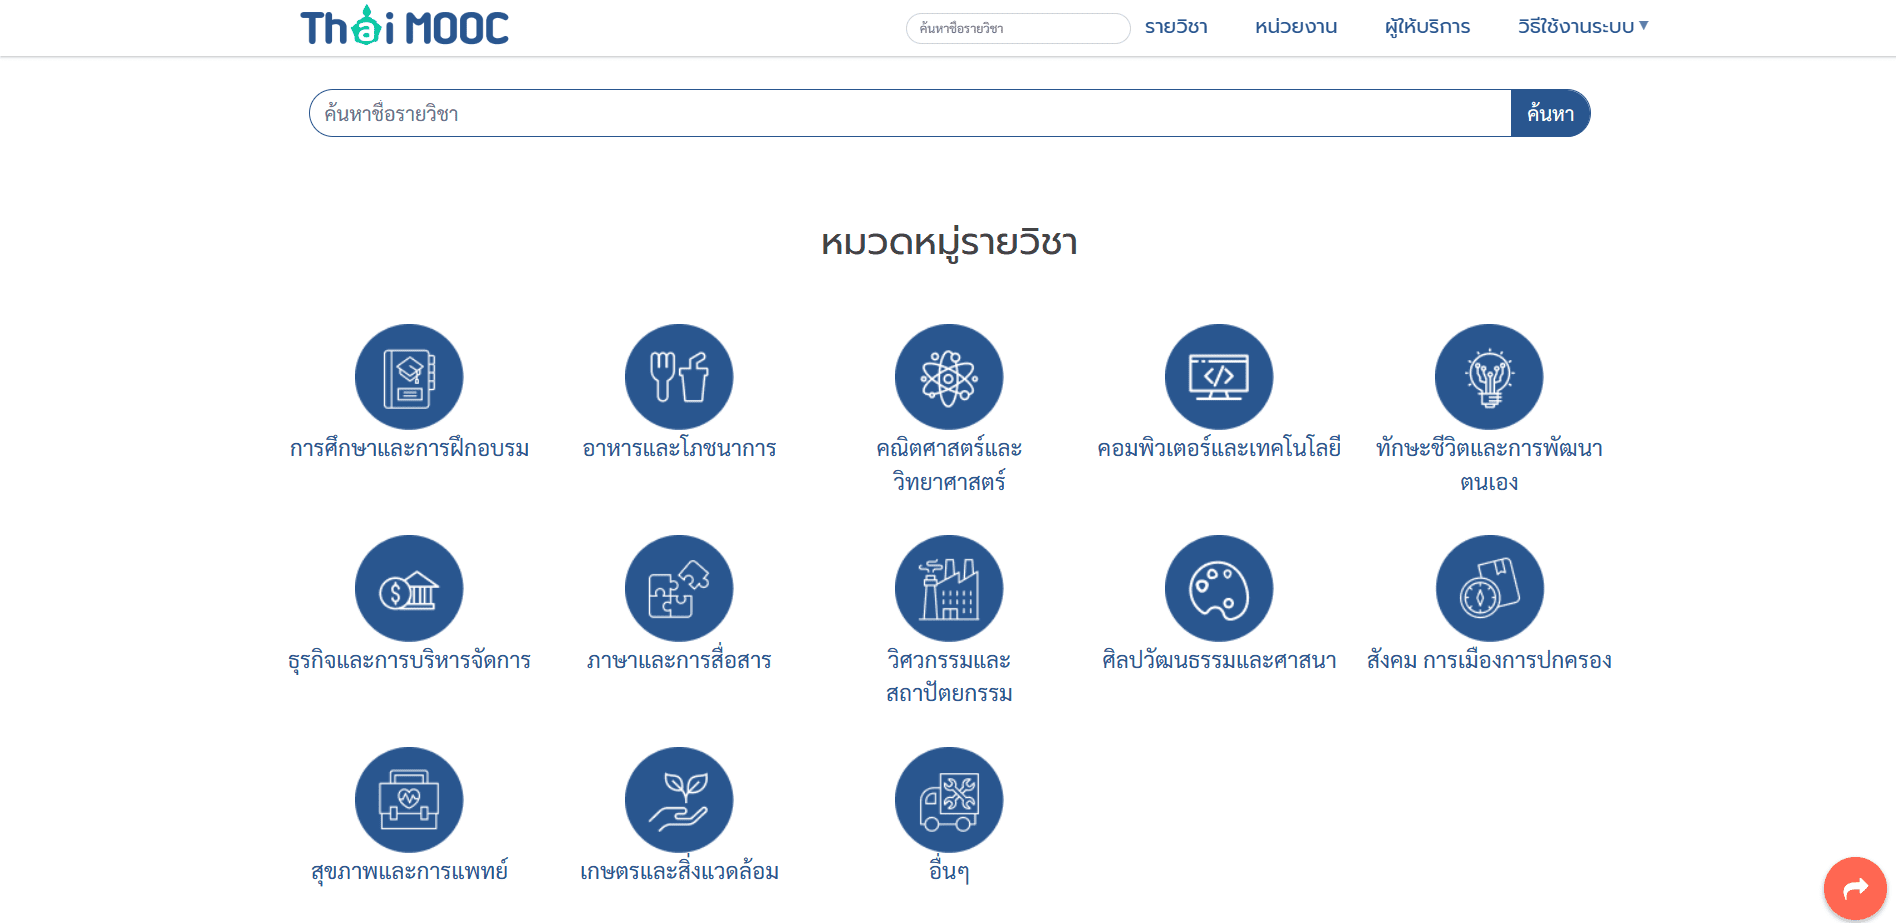 THAI MOOC